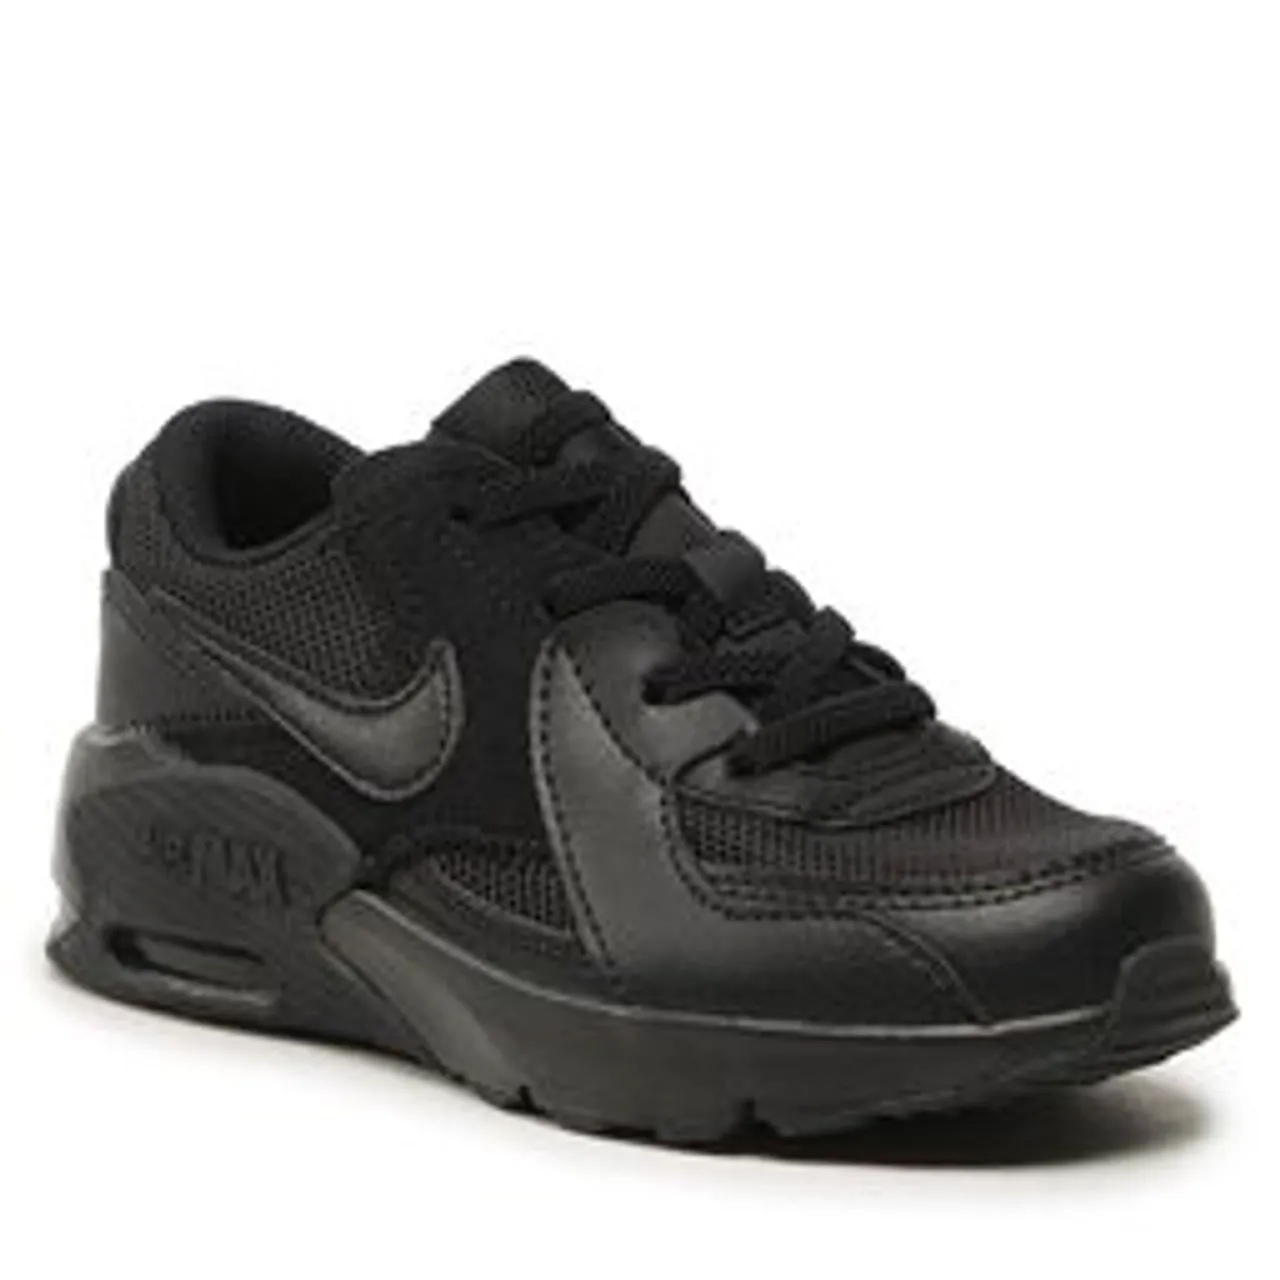 Sneakers Nike Air Max Excee (PS) CD6892 005 Schwarz